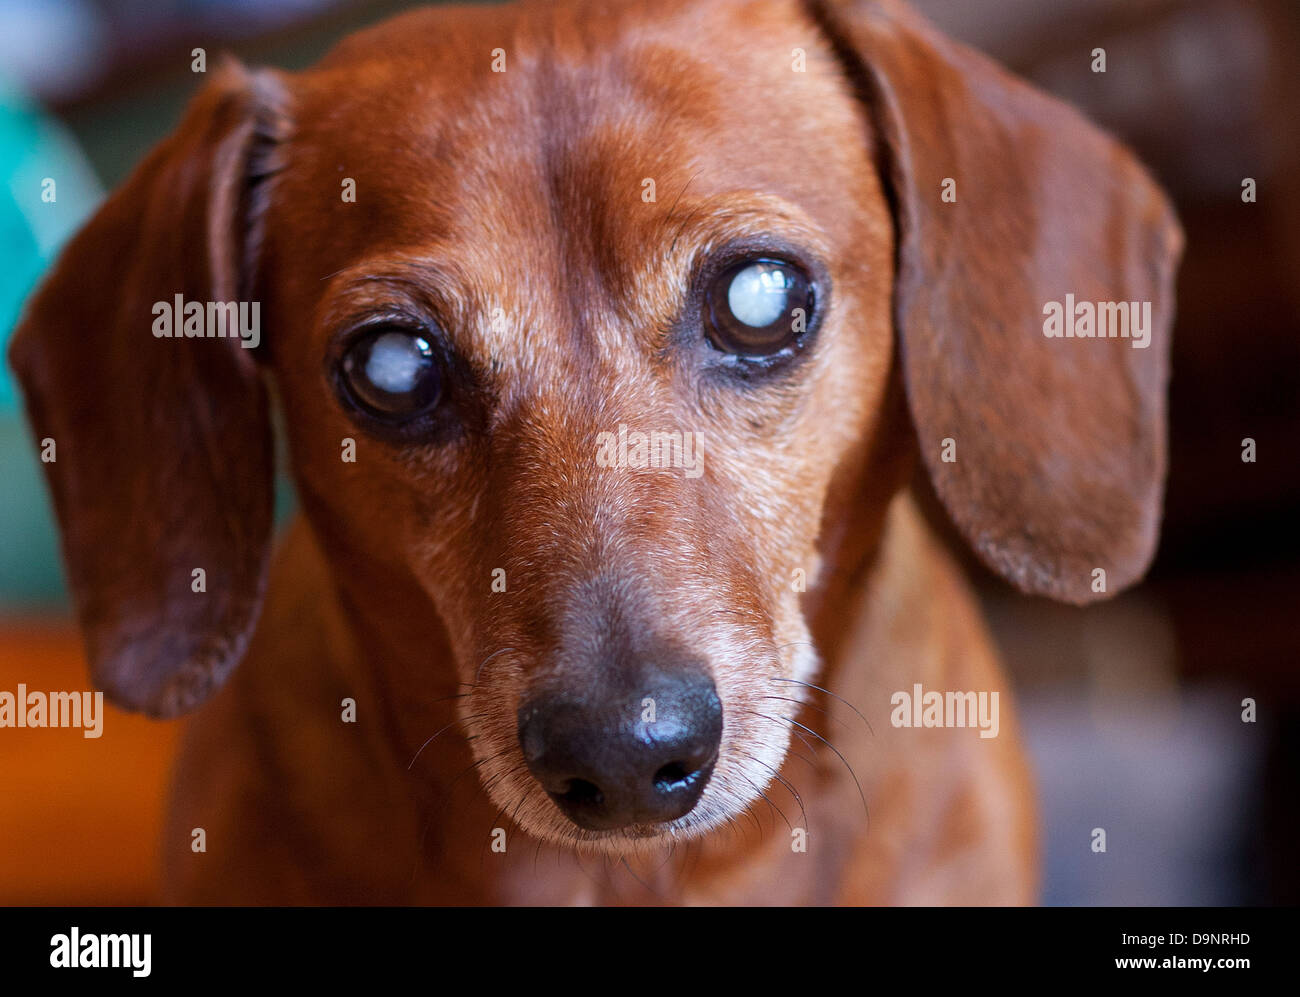 Blind dog Stock Photo